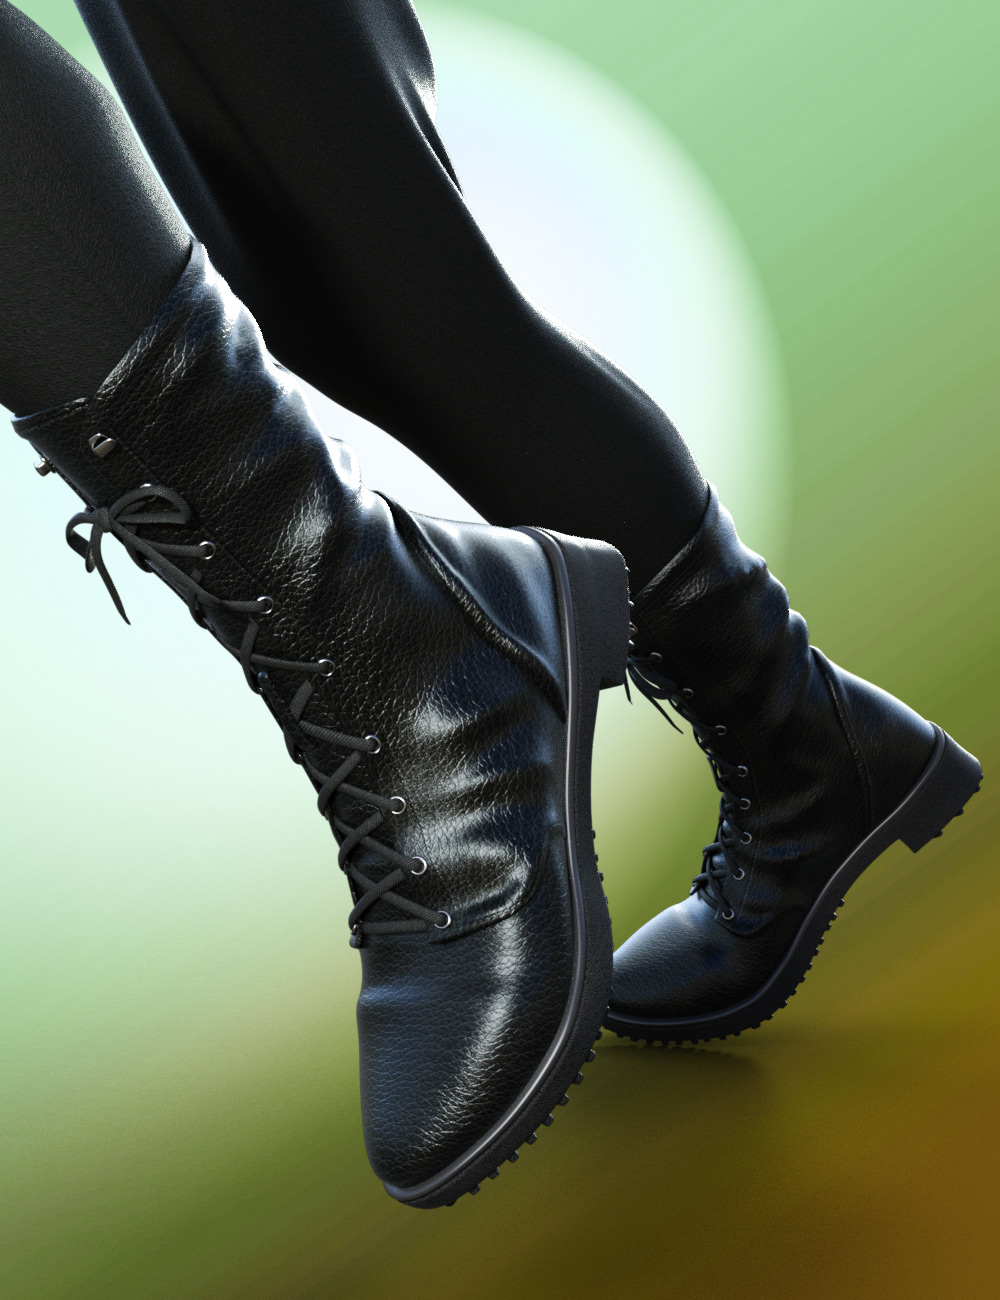 Rocker Boots for Genesis 8 Male(s) by: tentman, 3D Models by Daz 3D